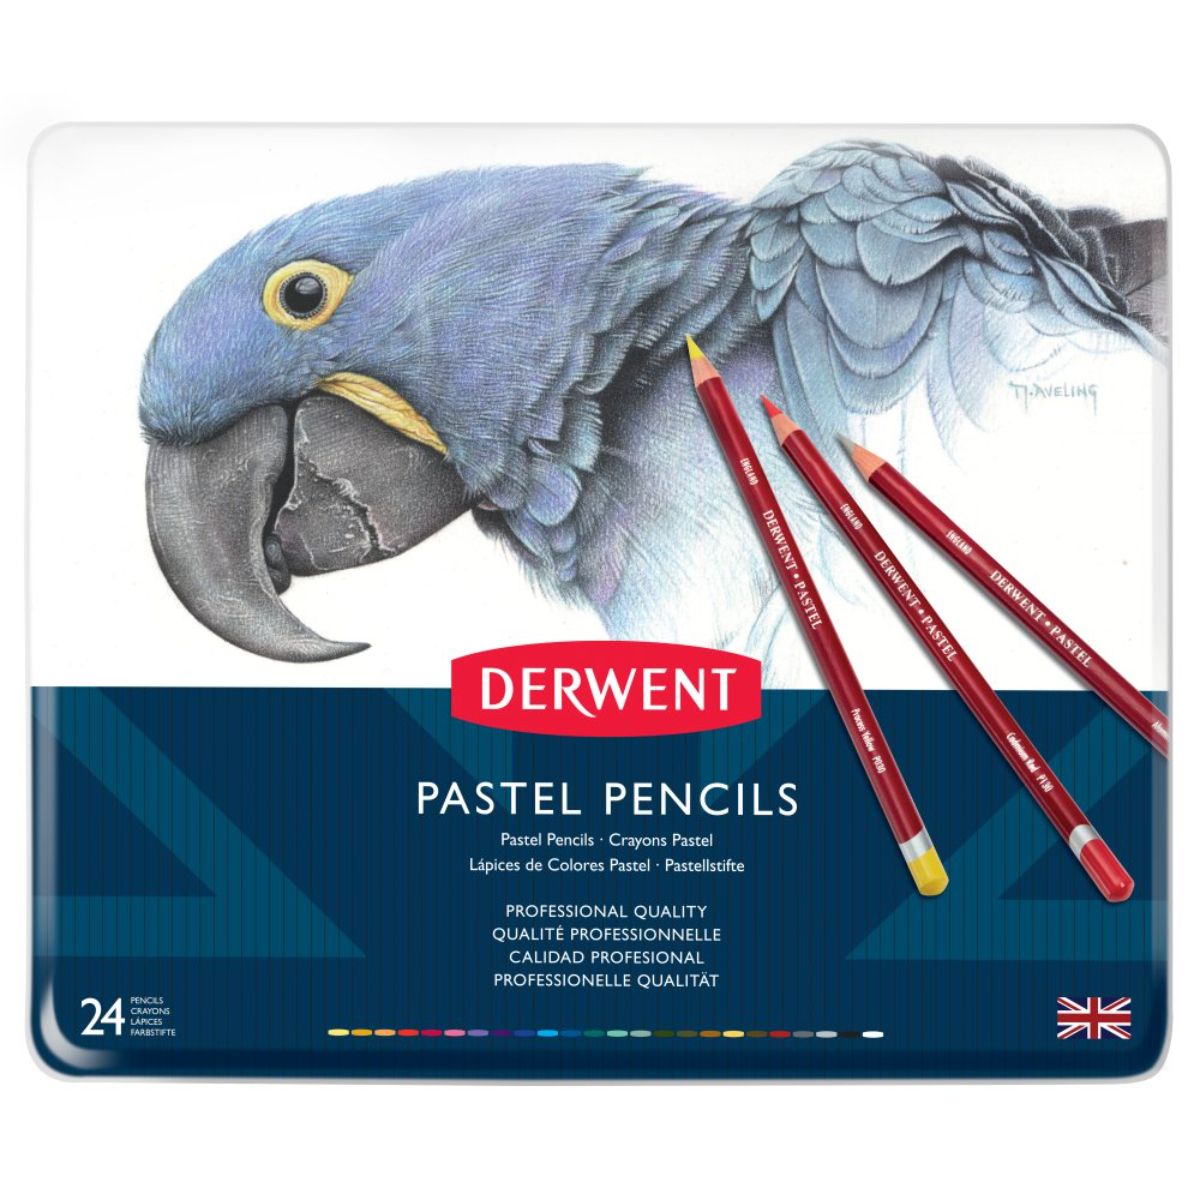 ダーウェント パステルペンシル メタルケース 24色セット 文具 高級色鉛筆 イギリス製